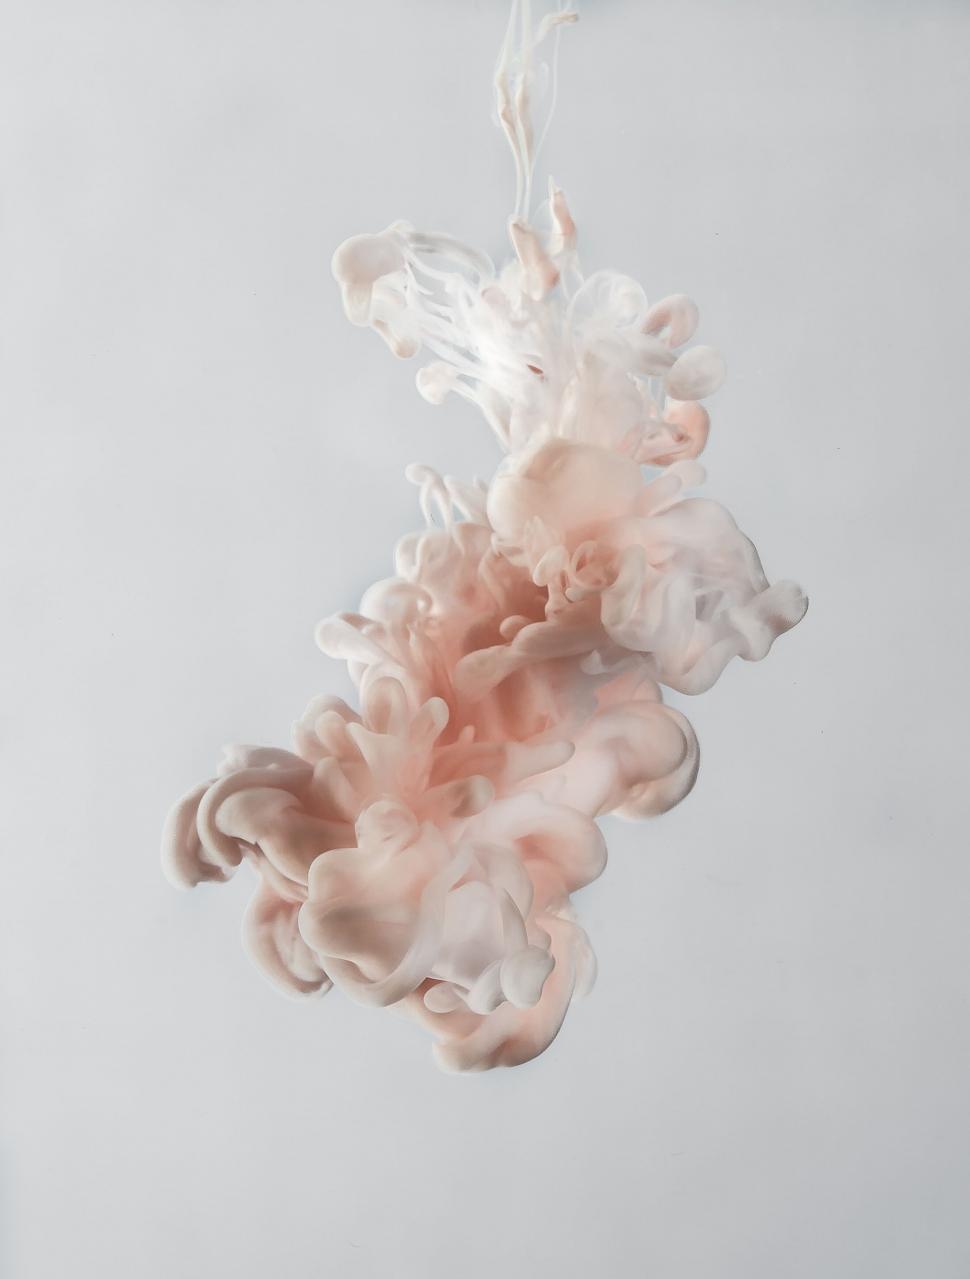 Free Image of Elegant smoke swirls floating on white background 